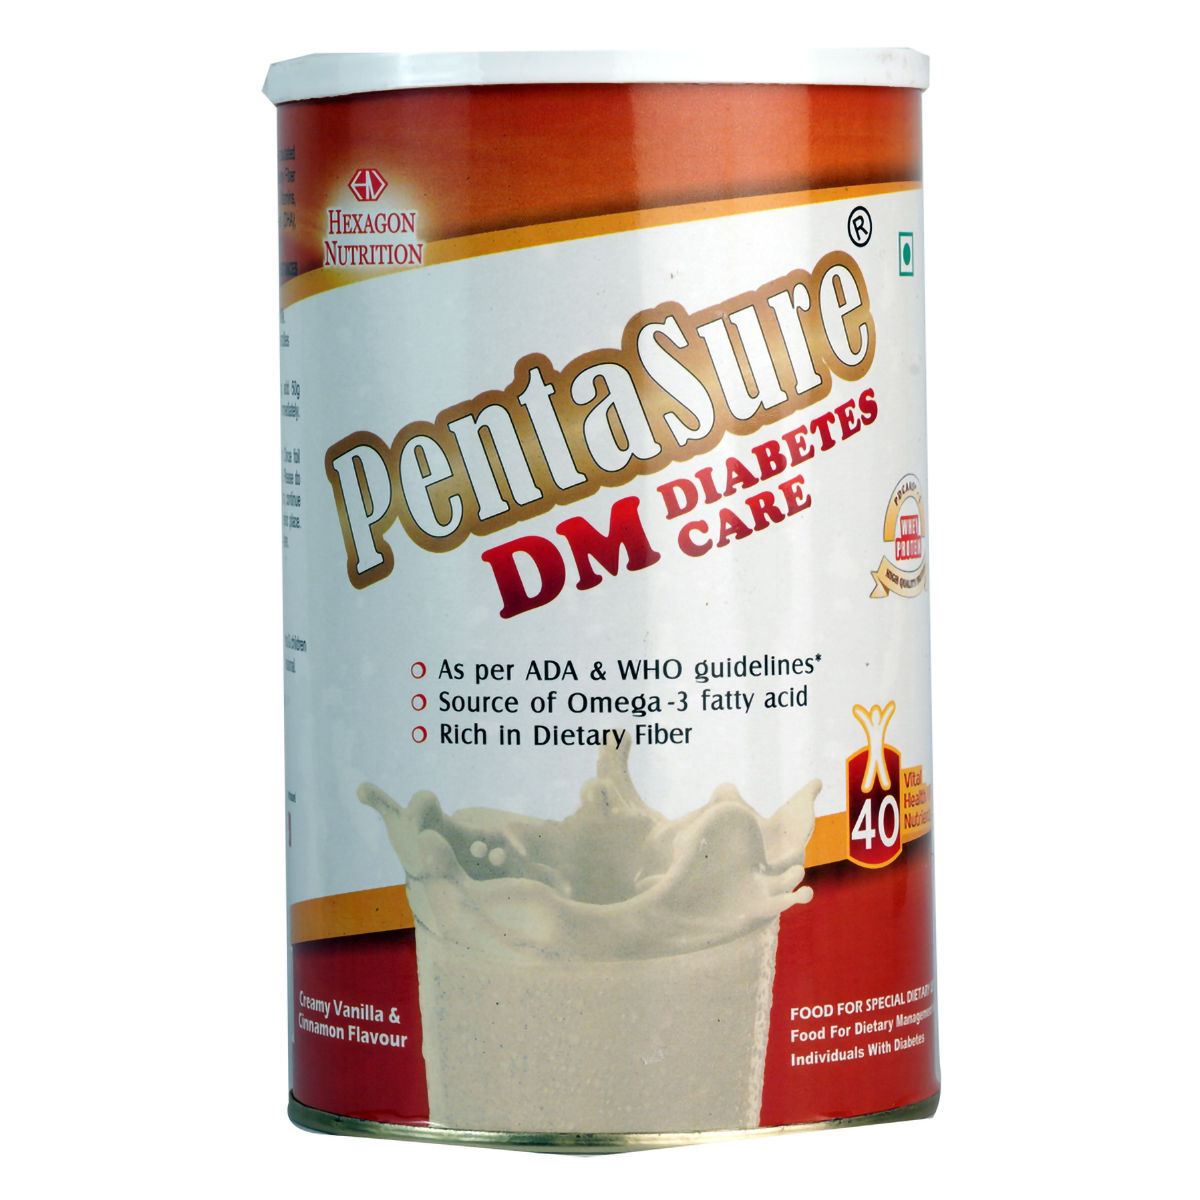 Buy Pentasure DM Diabetes Care Creamy Vanilla & Cinnamon Flavour Powder, 400 gm Online